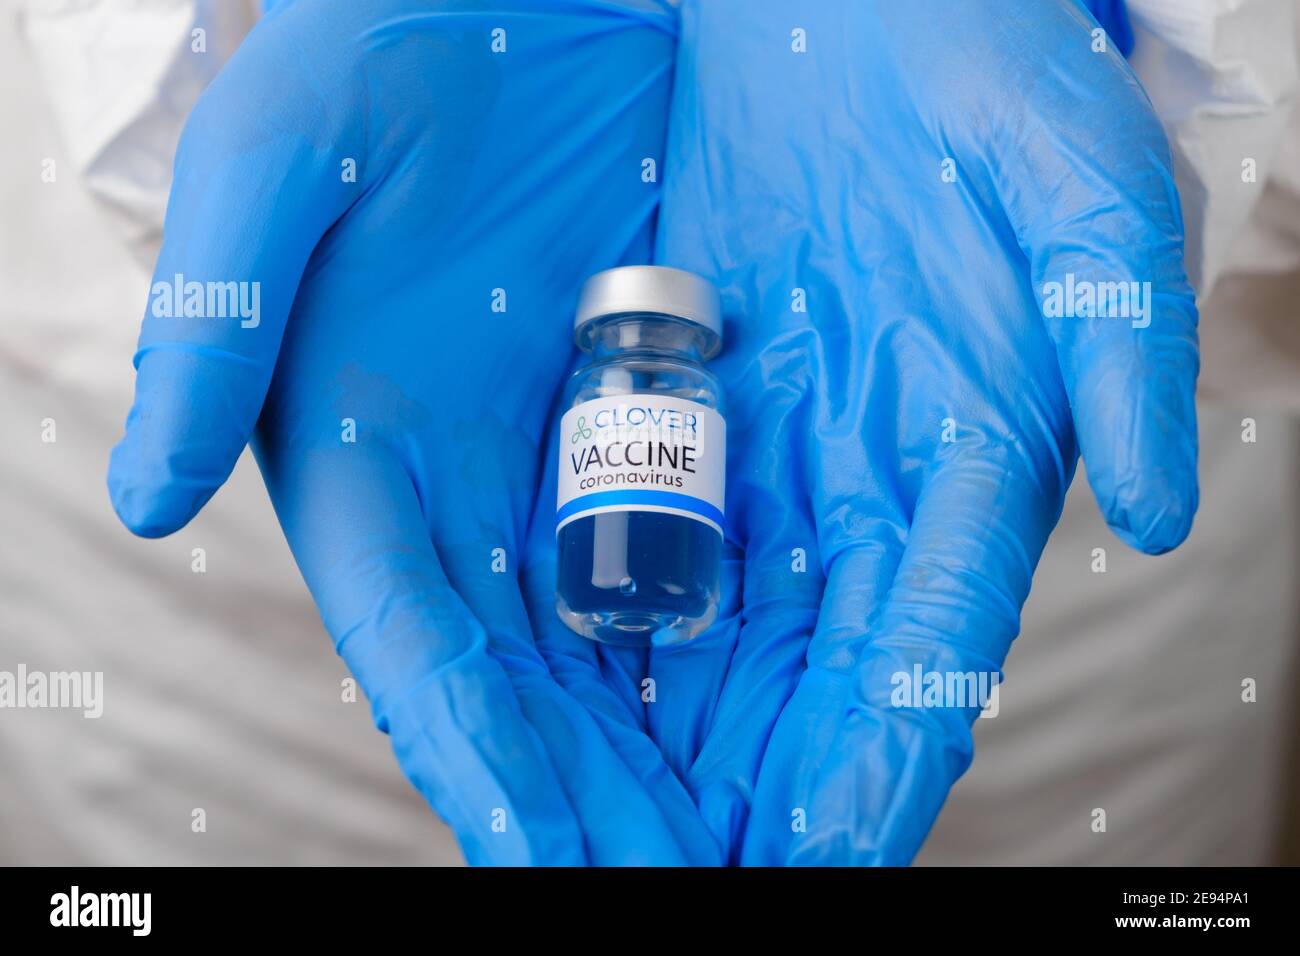 Vaccino Clover per la prevenzione del coronavirus, Covid-19, Sars-Cov-2 in medici mani in guanti di gomma blu, gennaio 2021, San Francisco, USA. Foto Stock